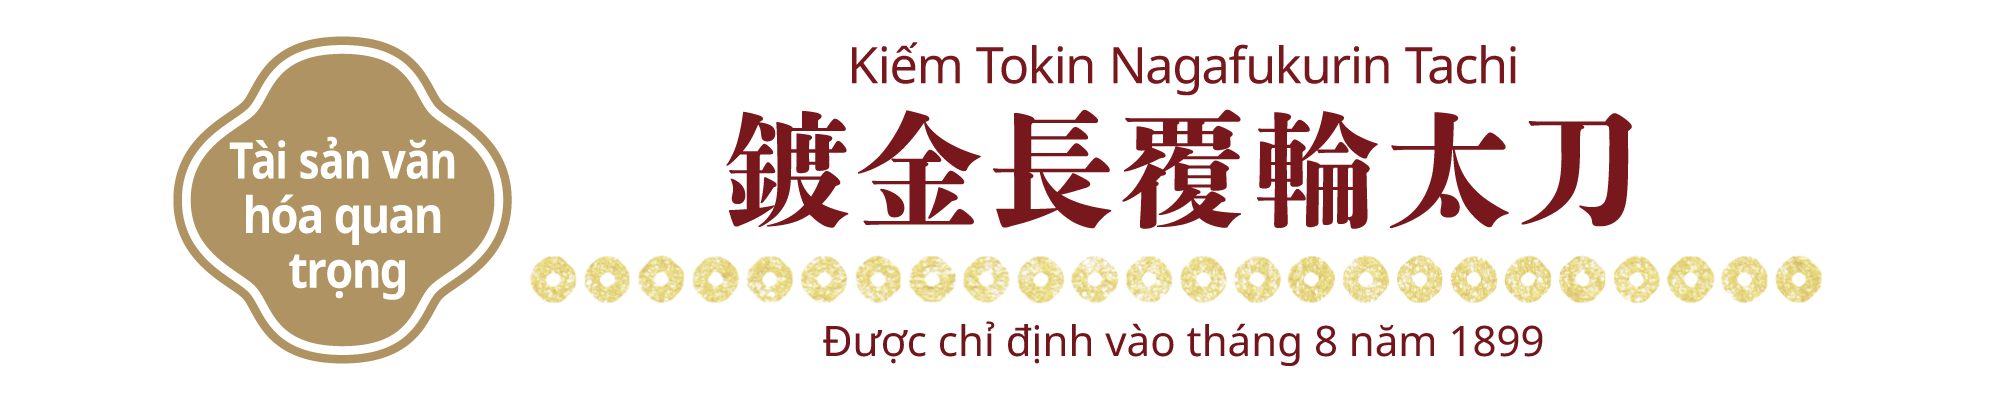 [Tài sản văn hóa quan trọng]</strong>Kiếm Tokin Nagafukurin Tachi, Được chỉ định vào tháng 8 năm 1899